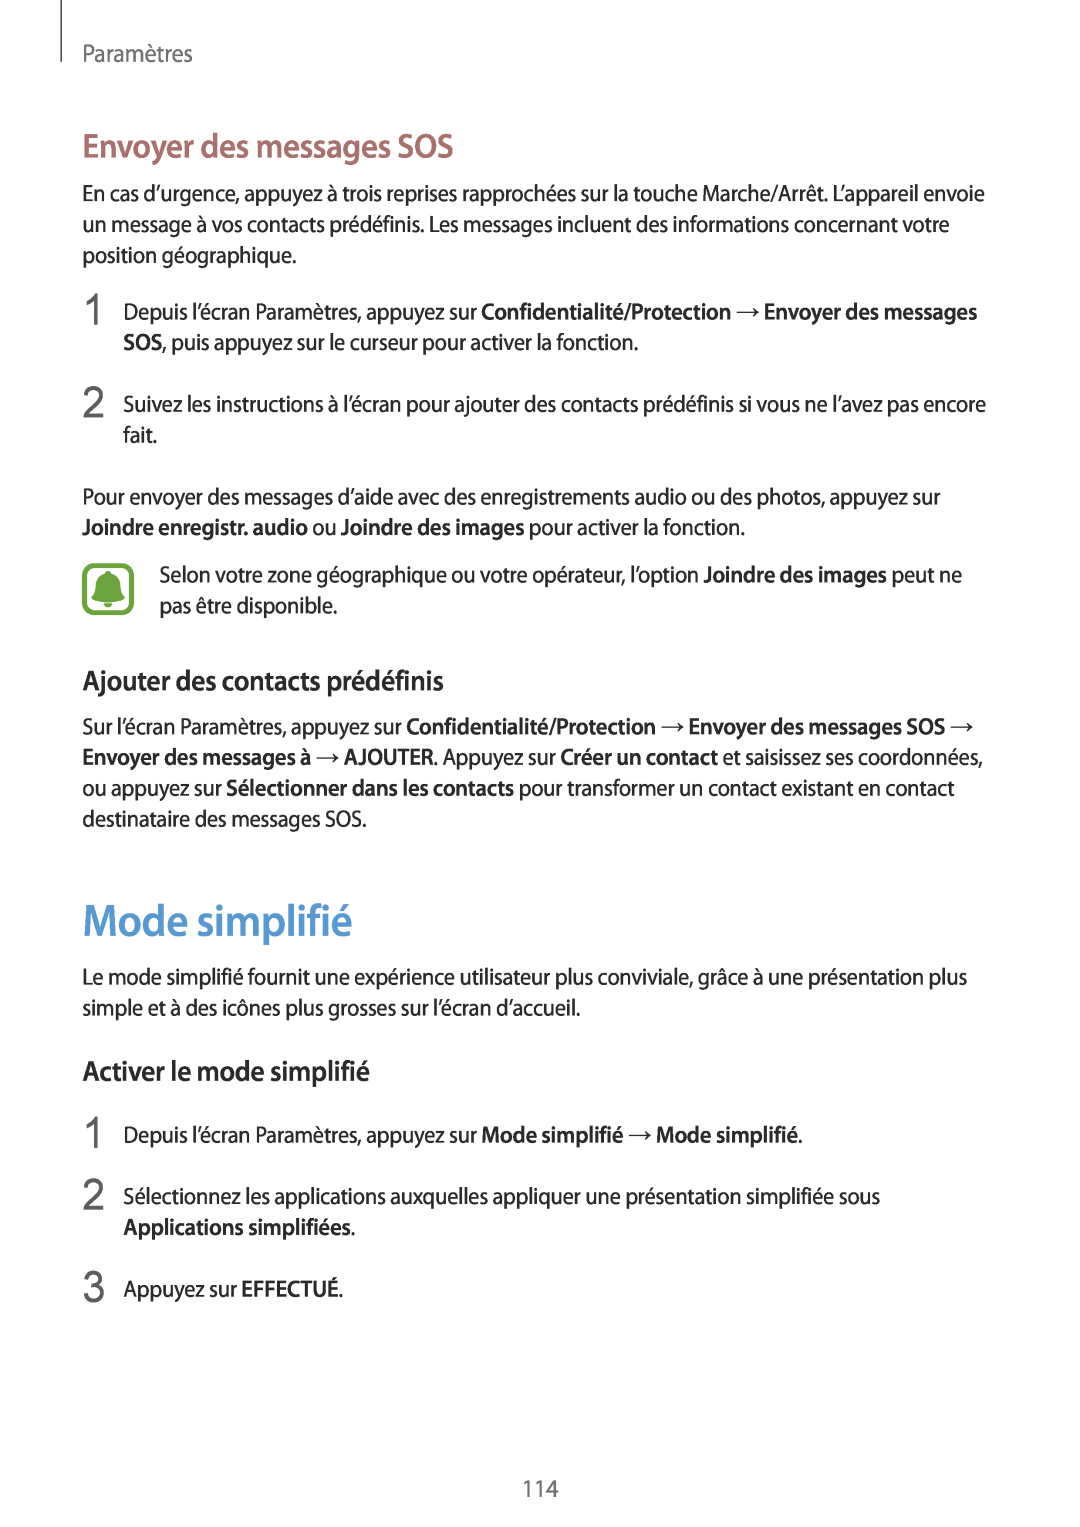 Samsung SM-G920FZBAXEF Mode simplifié, Envoyer des messages SOS, Ajouter des contacts prédéfinis, Applications simplifiées 